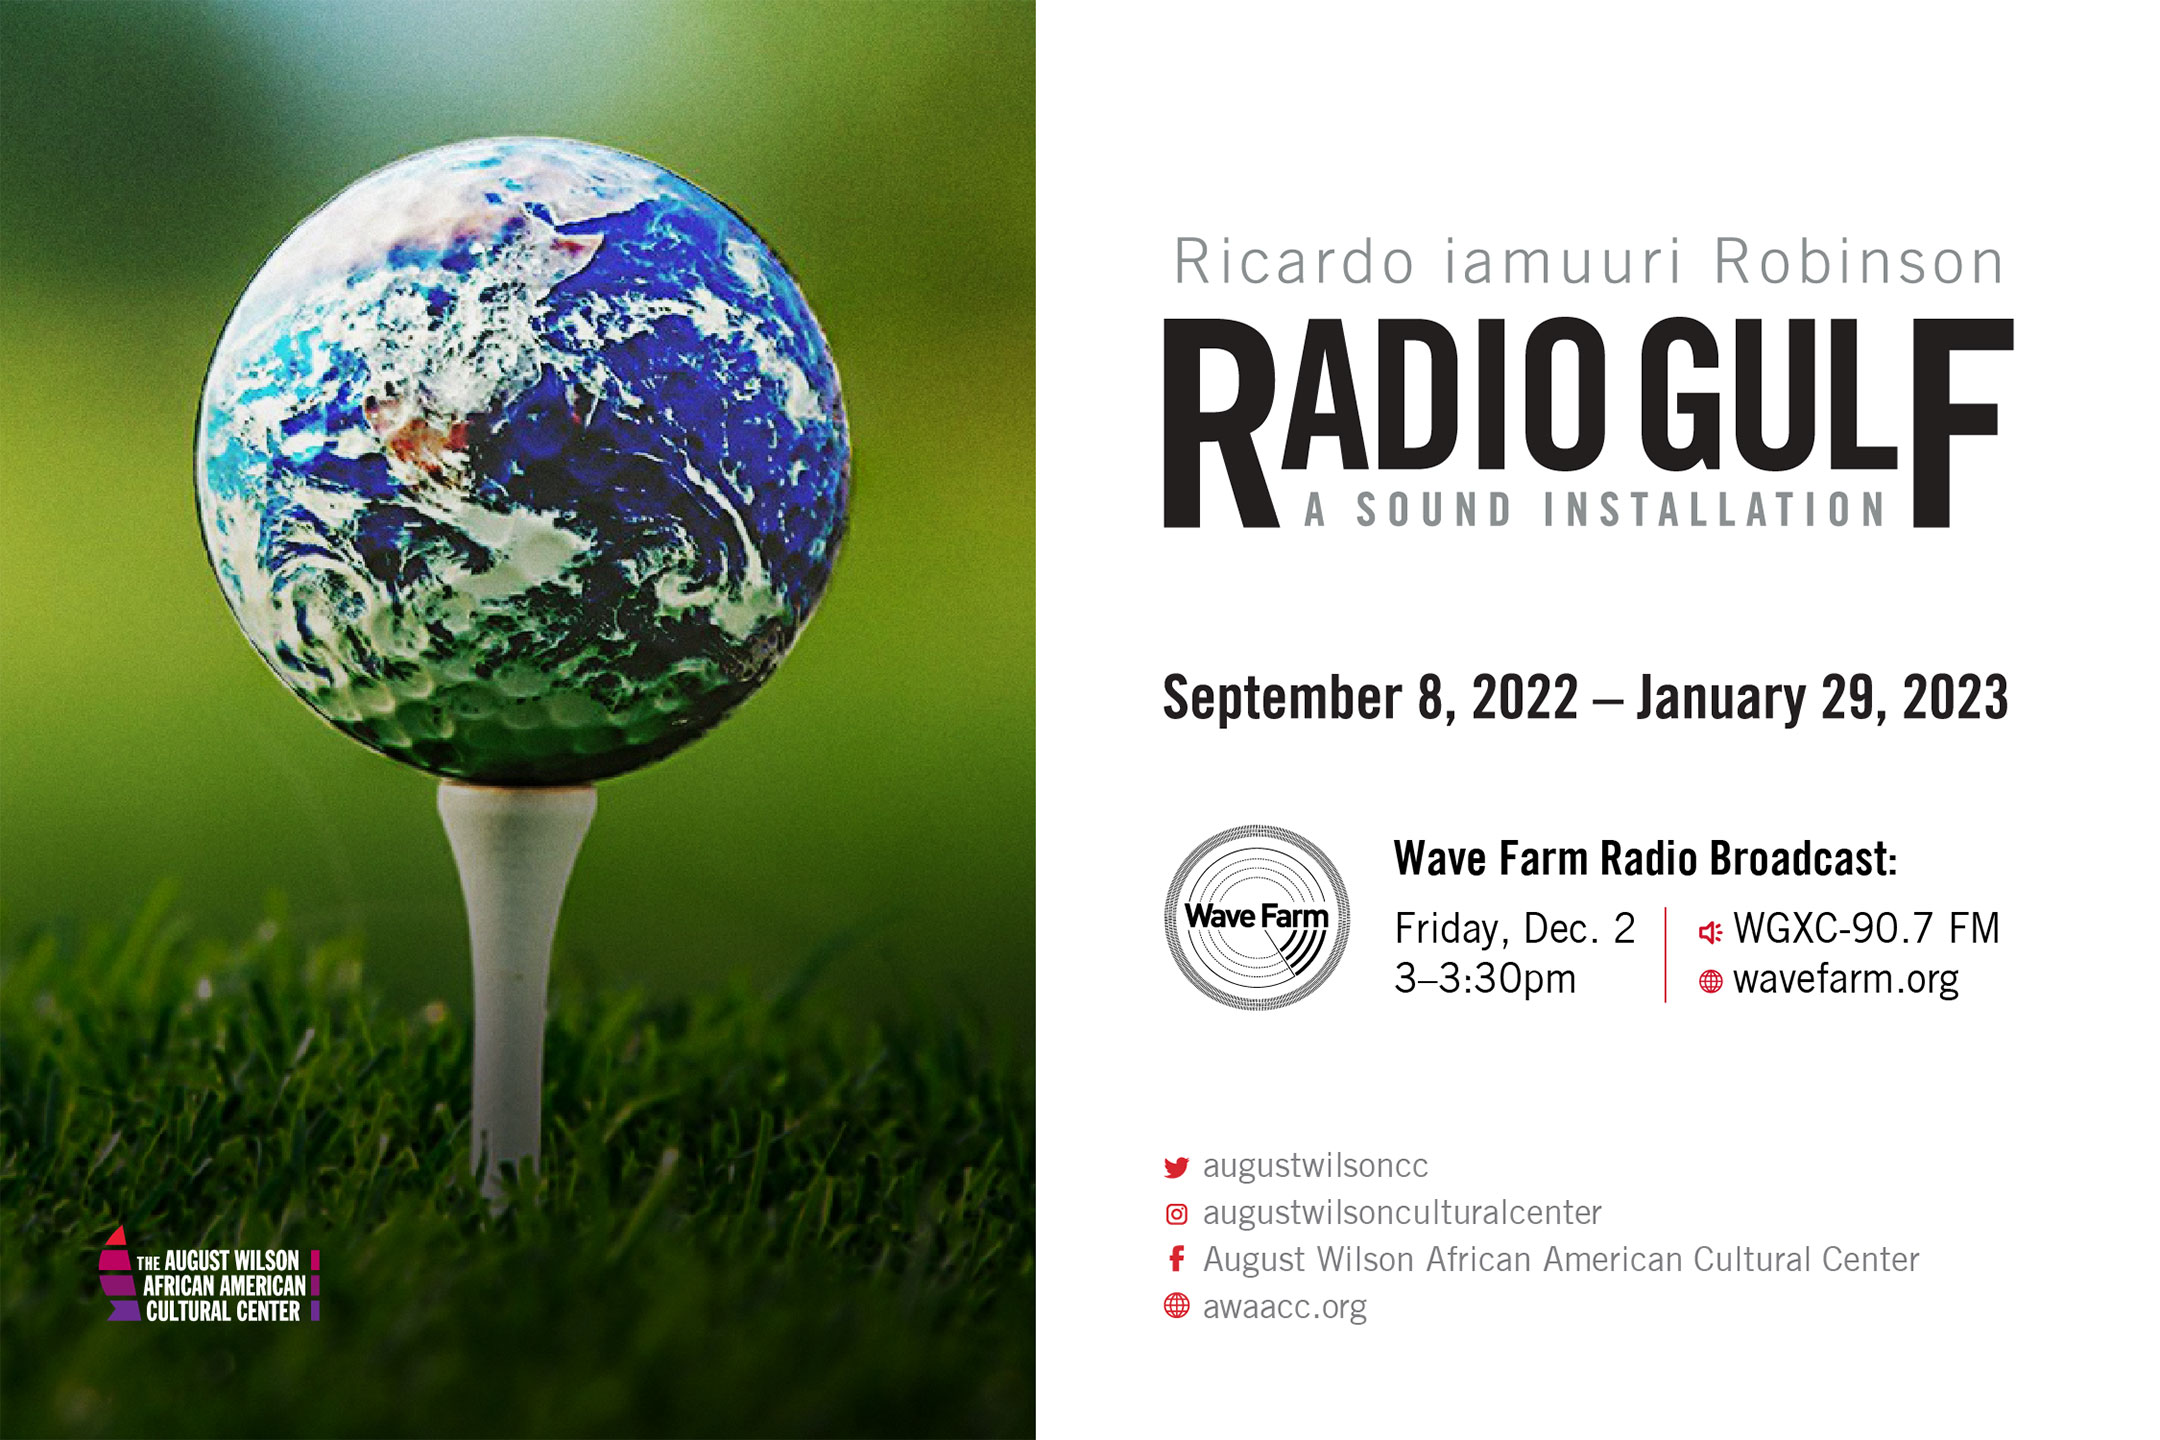 Radio Gulf Opening Reception